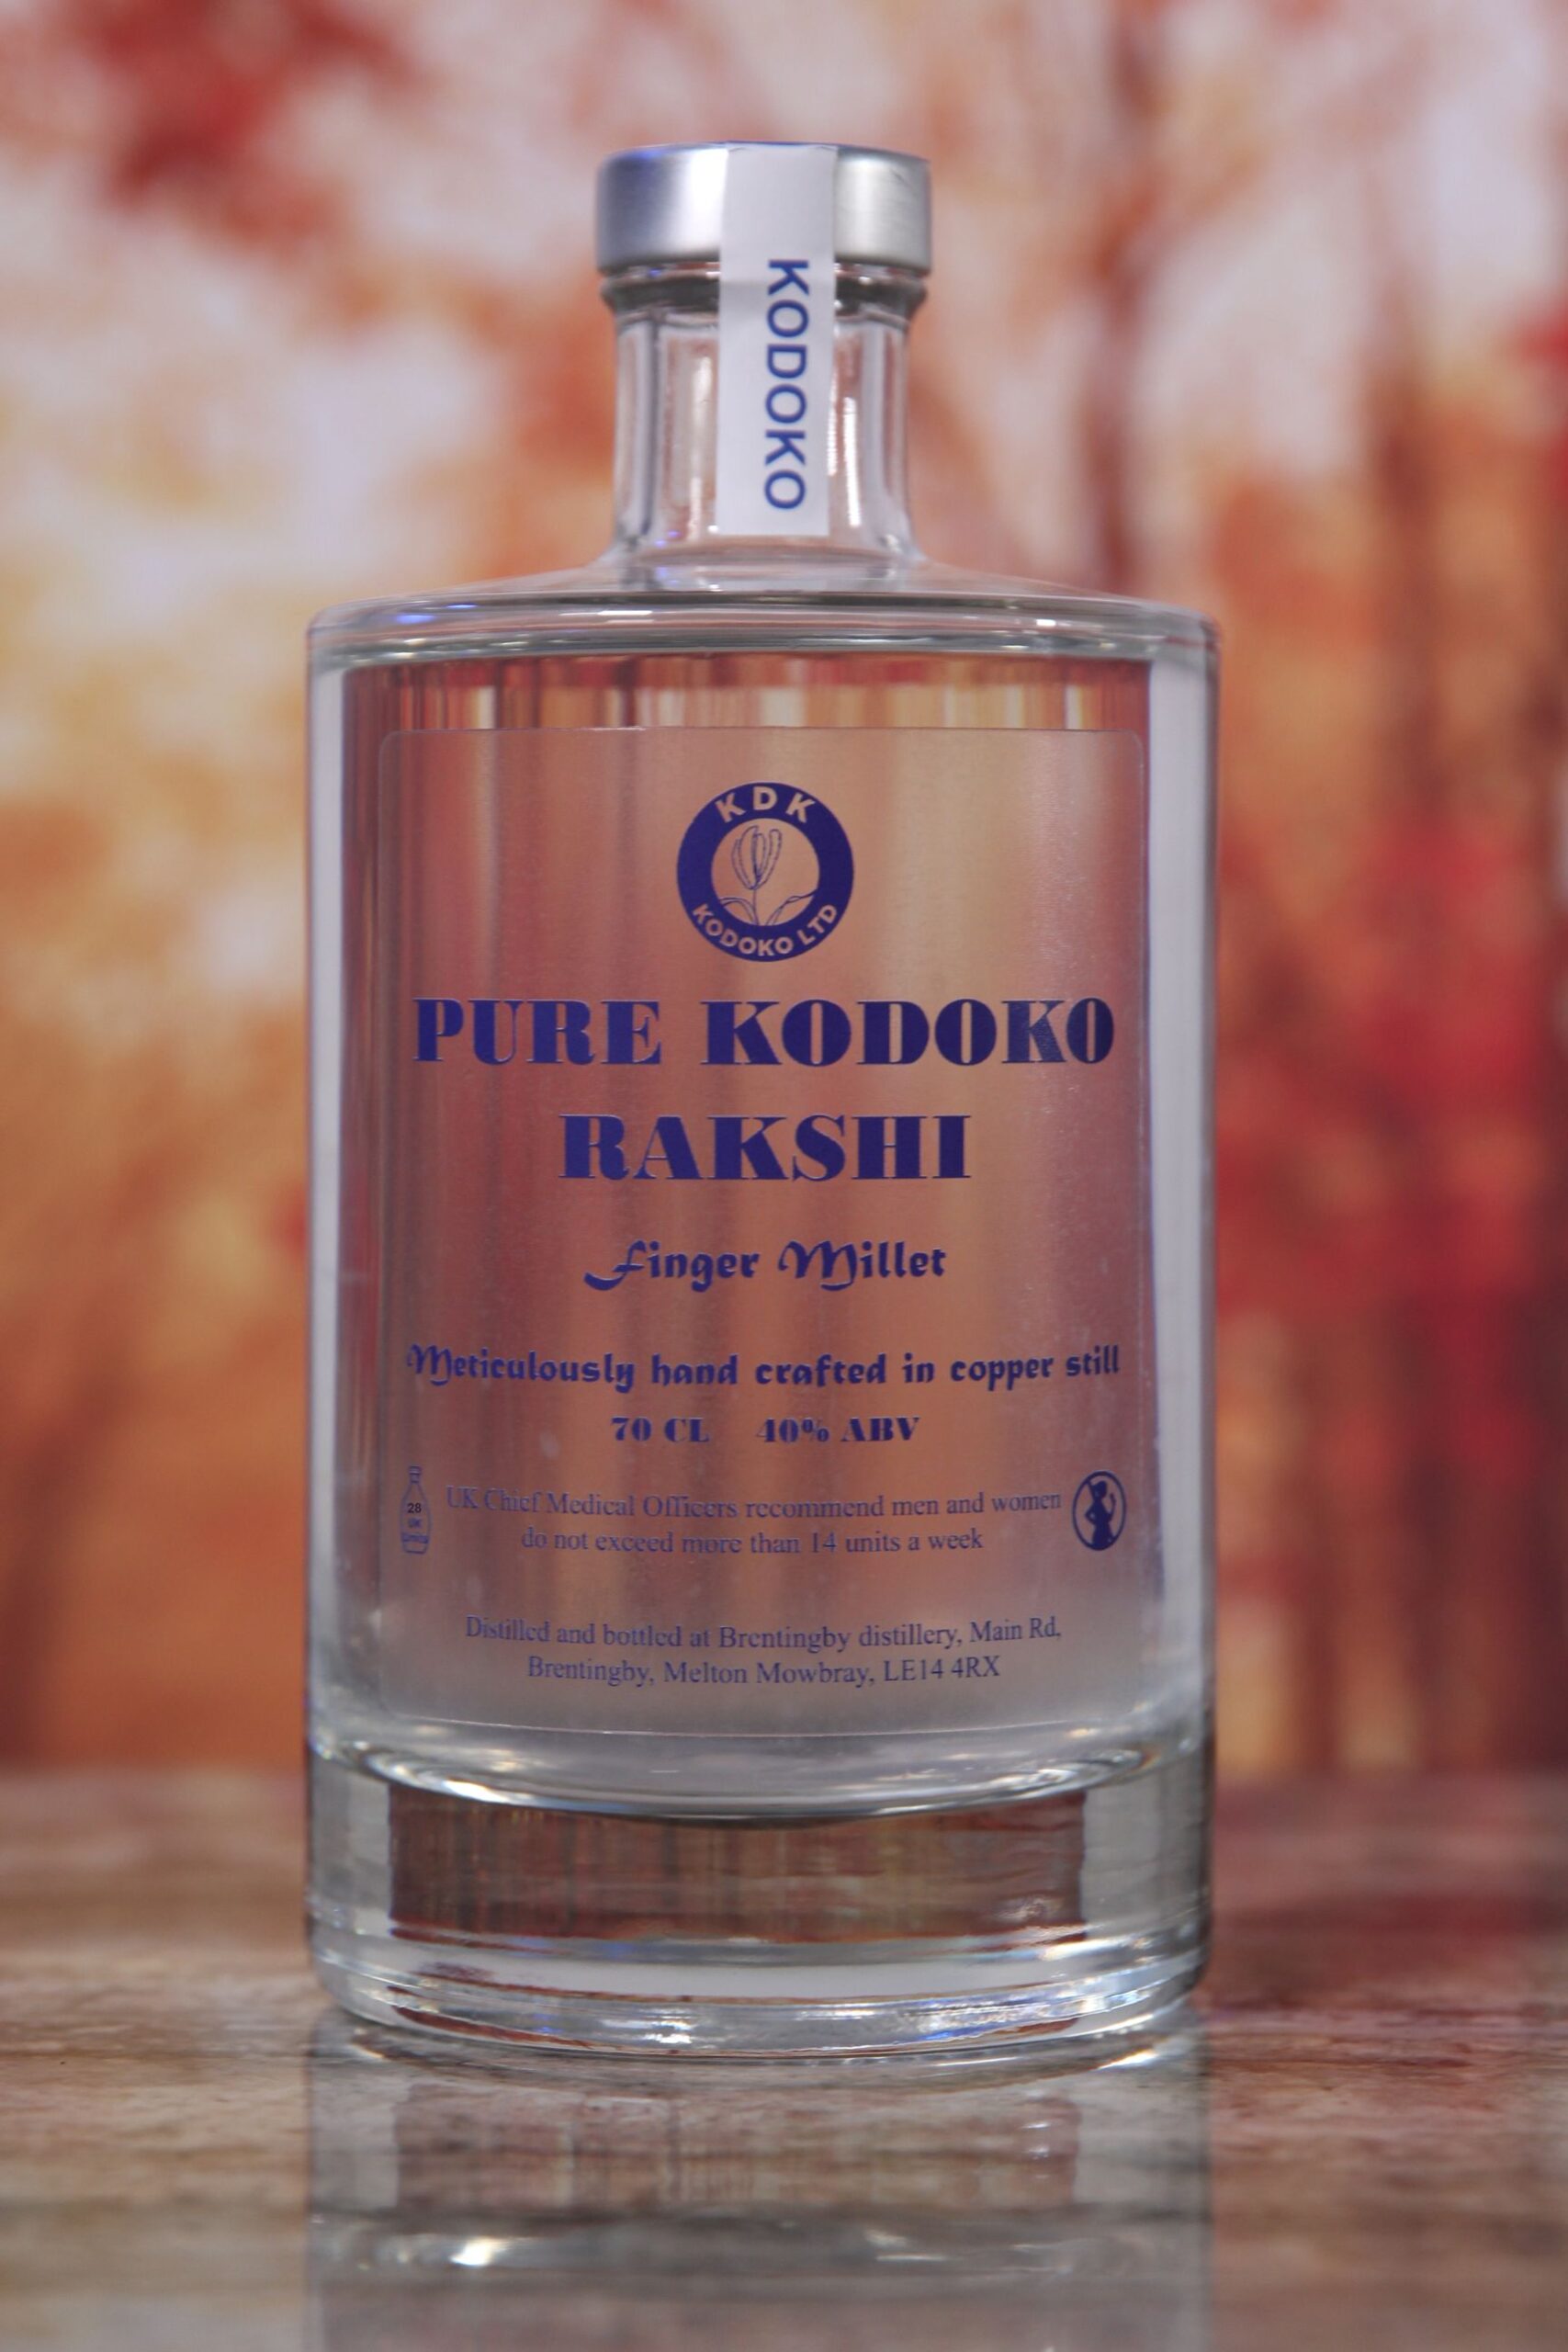 Kodoko vodka